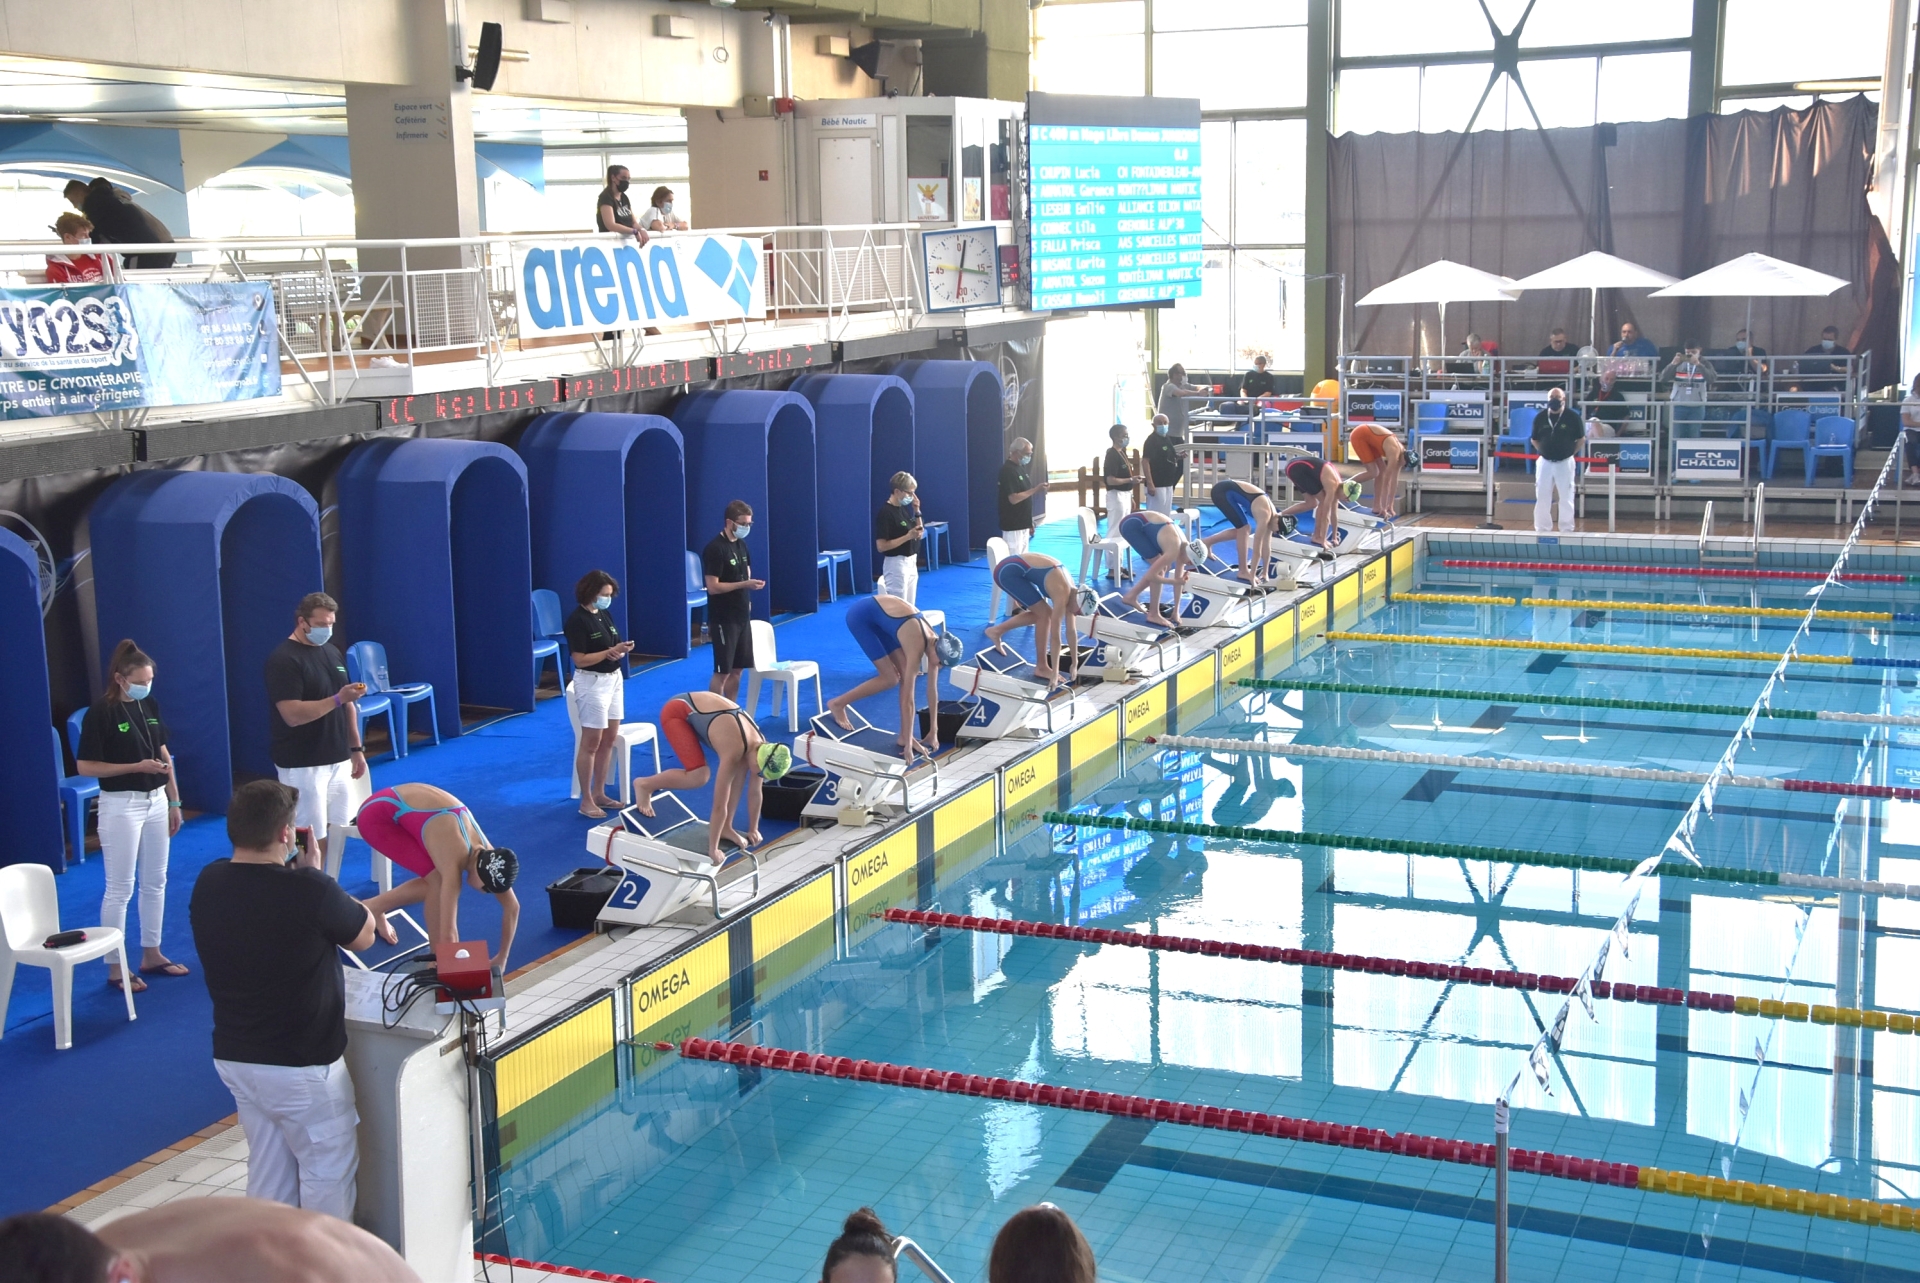 A l'Espace Nautique de Chalon-sur-Saône : Finales des Championnats de France Juniors de natation du Du 24 au 29 mai de 17h30 à 19h30 - Toute l'actualité gratuite en un 1 clic